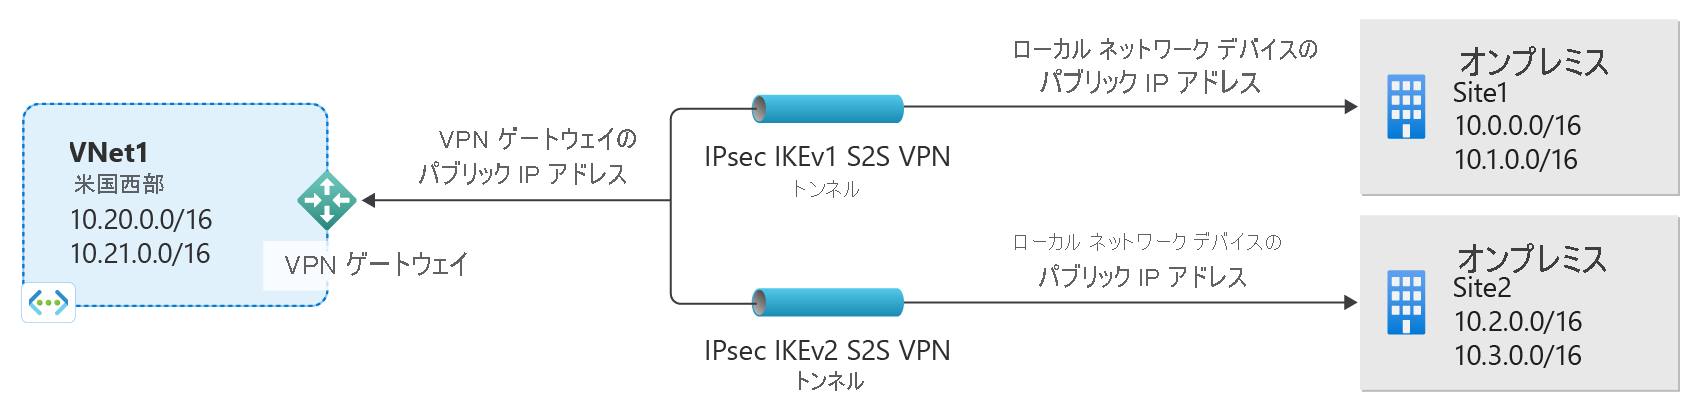 同じゲートウェイへの IKEv1 および IKEv2 の接続を示す図。